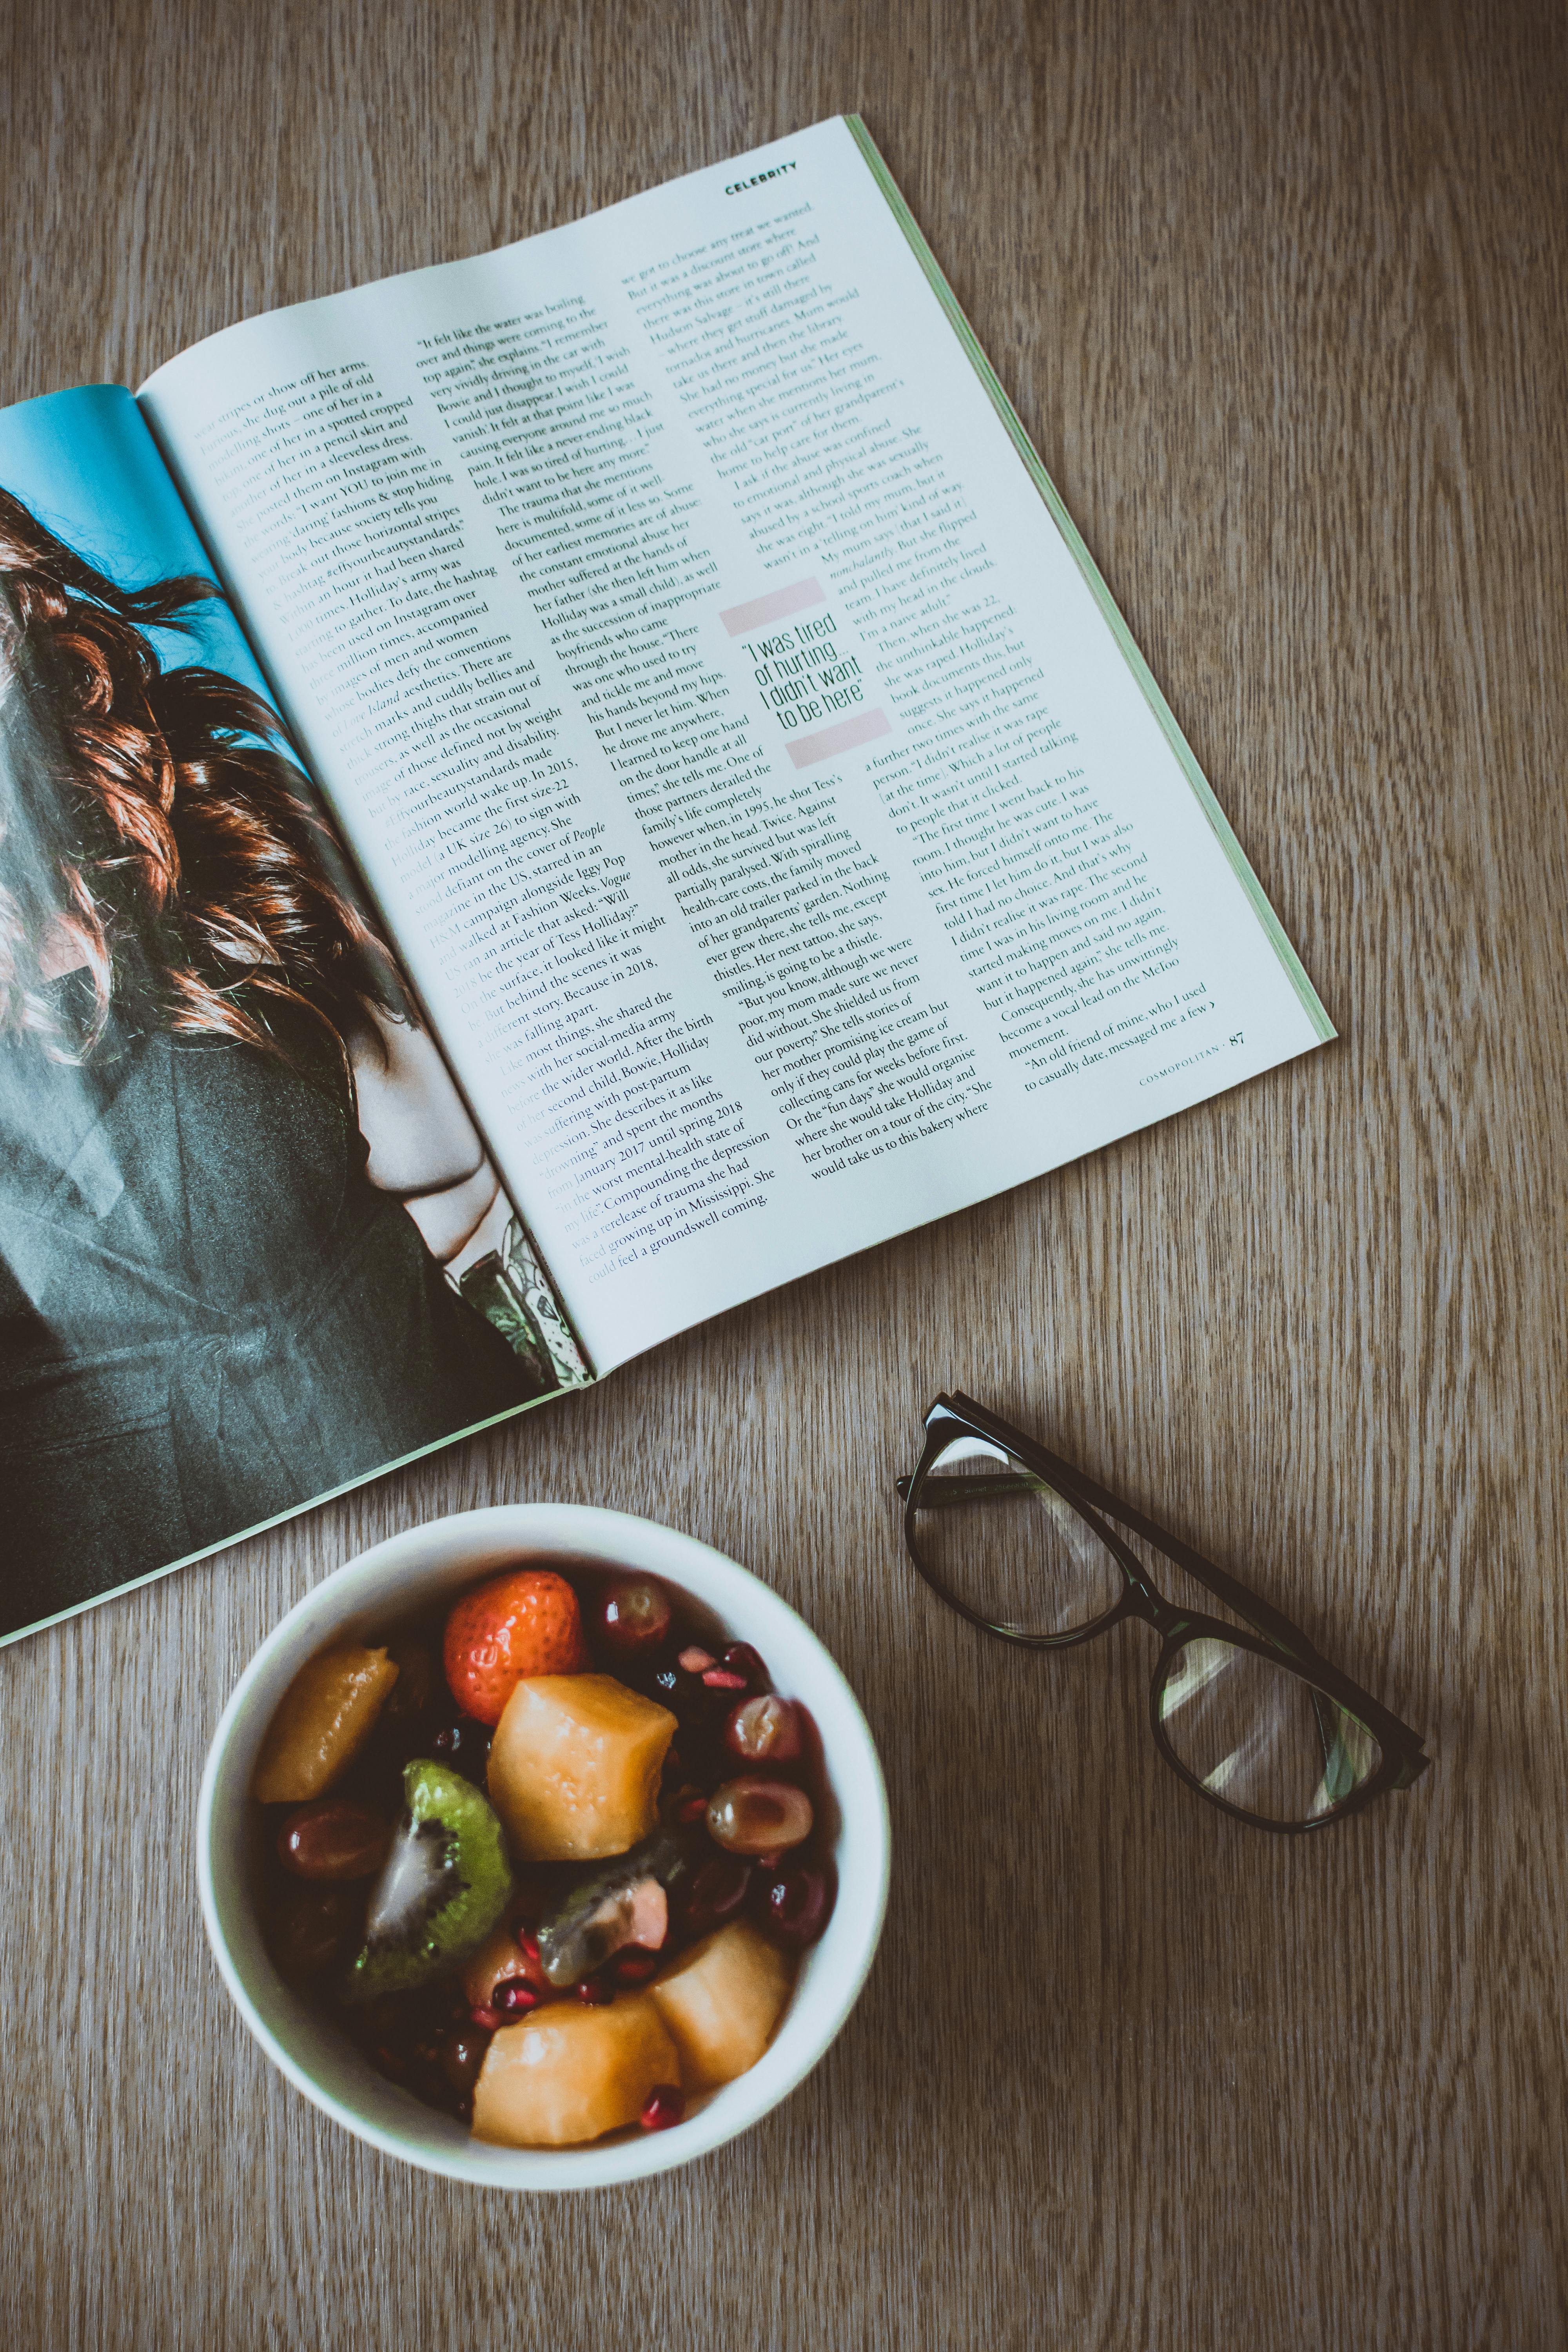 Taula amb una revista, unes ulleres i un bol amb menjar. Font: Pexels - Lisa Fotios 